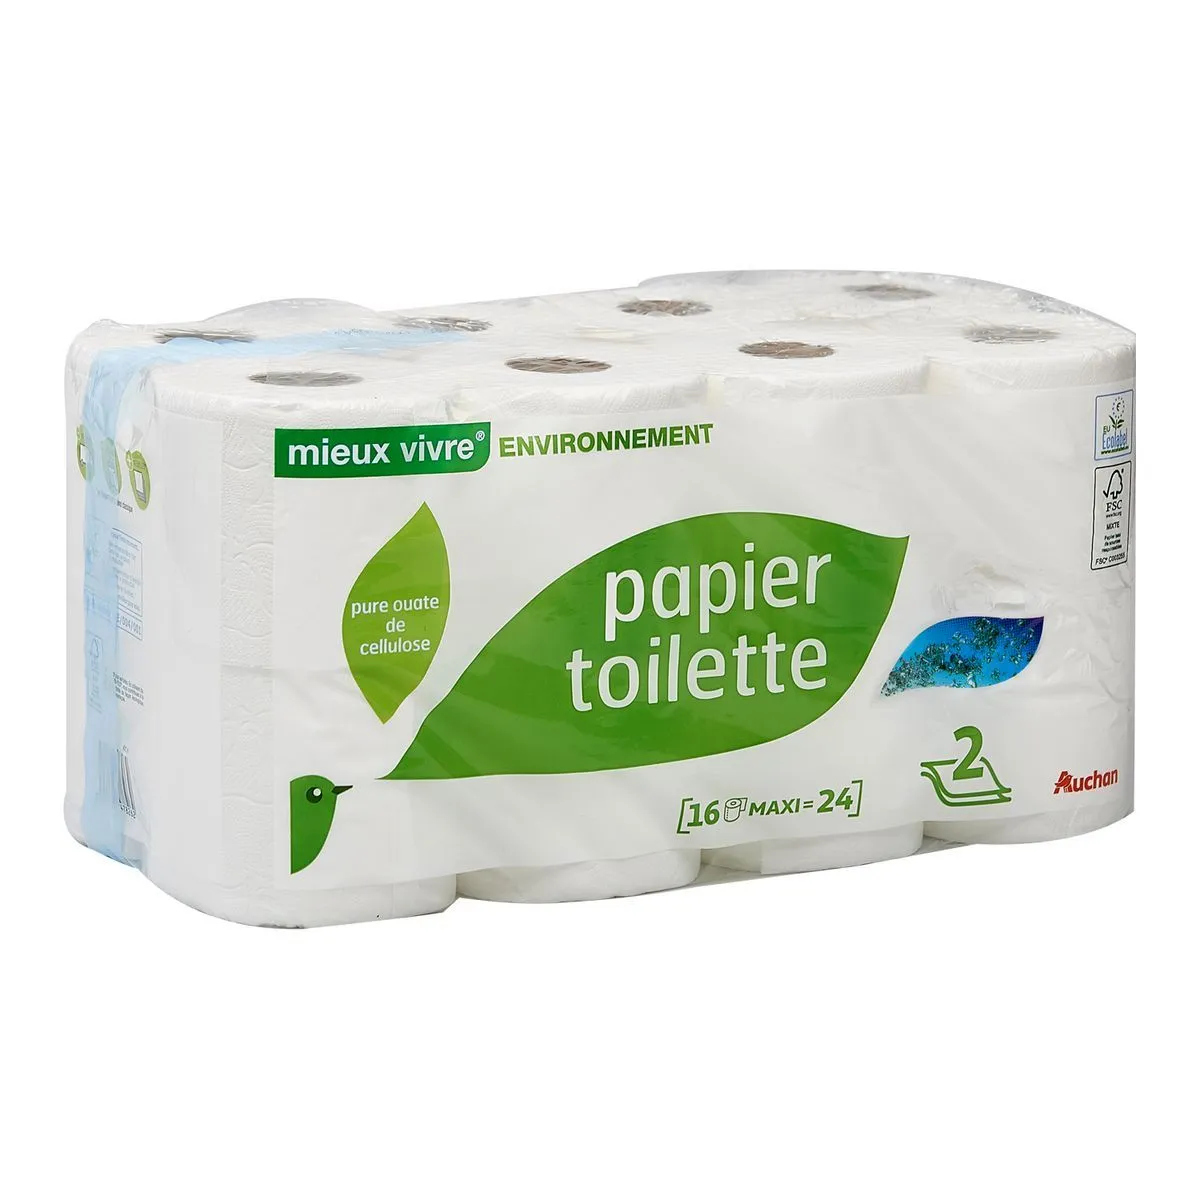 papier toilette mieux vivire en vironnement auchan